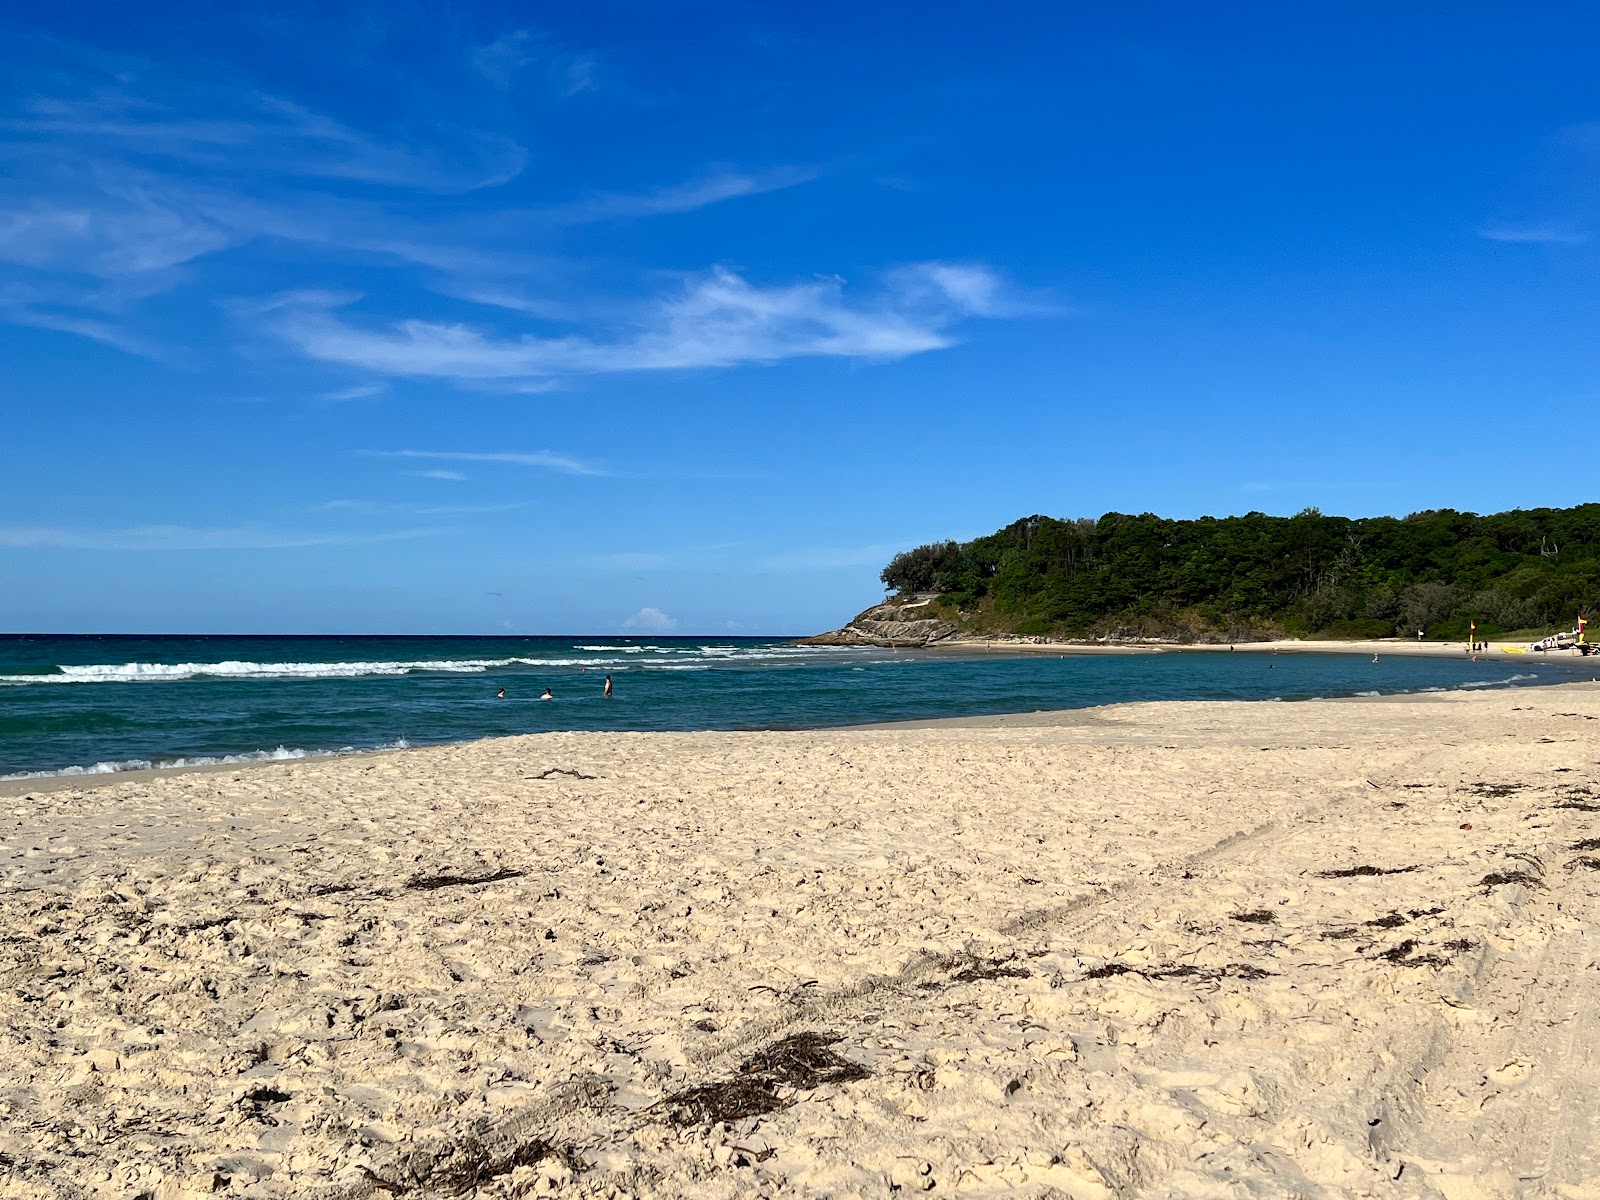 Fotografie cu Cylinder Beach - locul popular printre cunoscătorii de relaxare